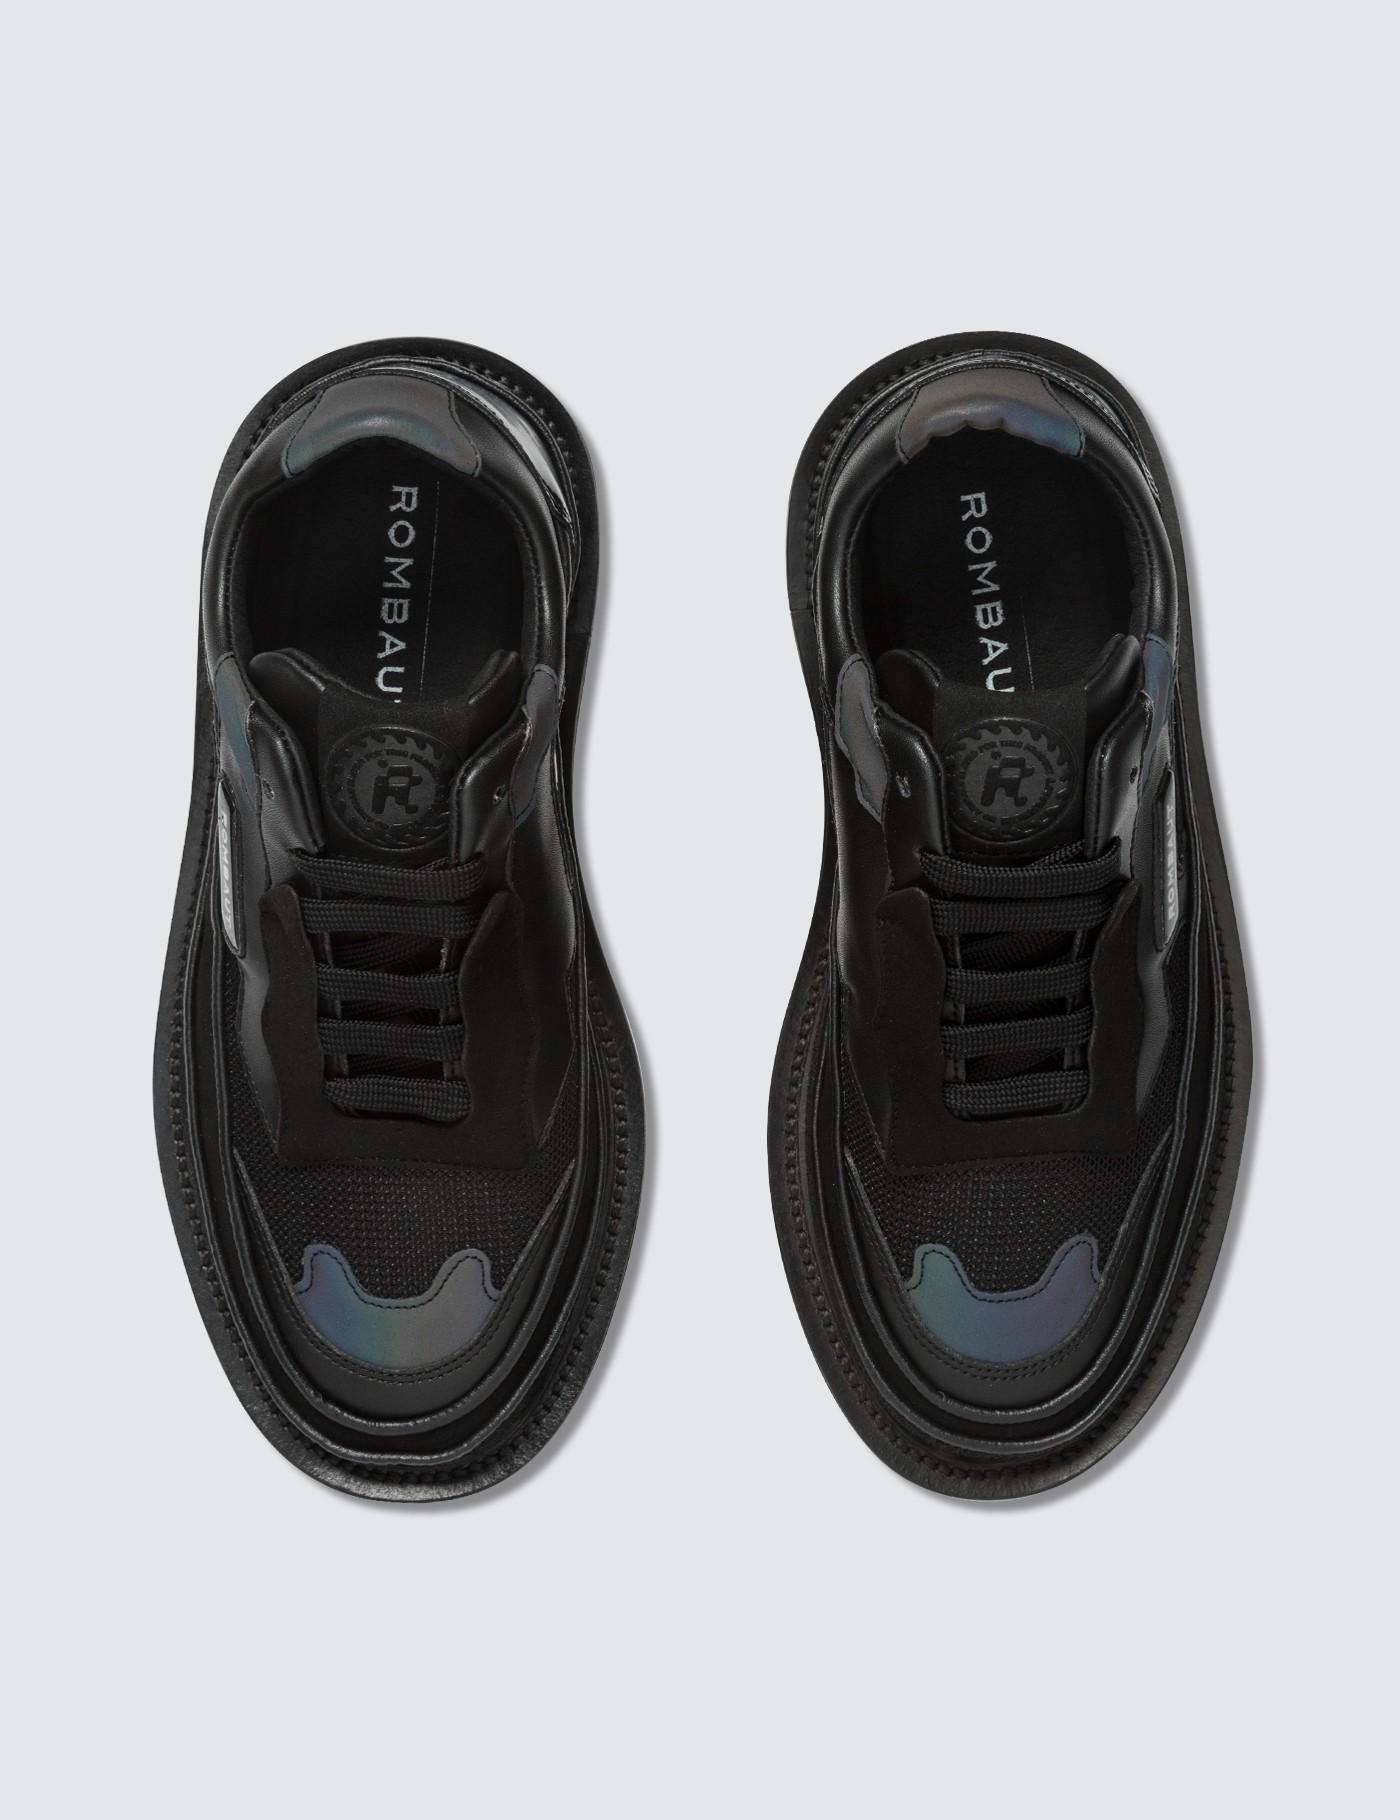 Rombaut Leather Protect Hybrid Sneaker in Black for Men - Lyst